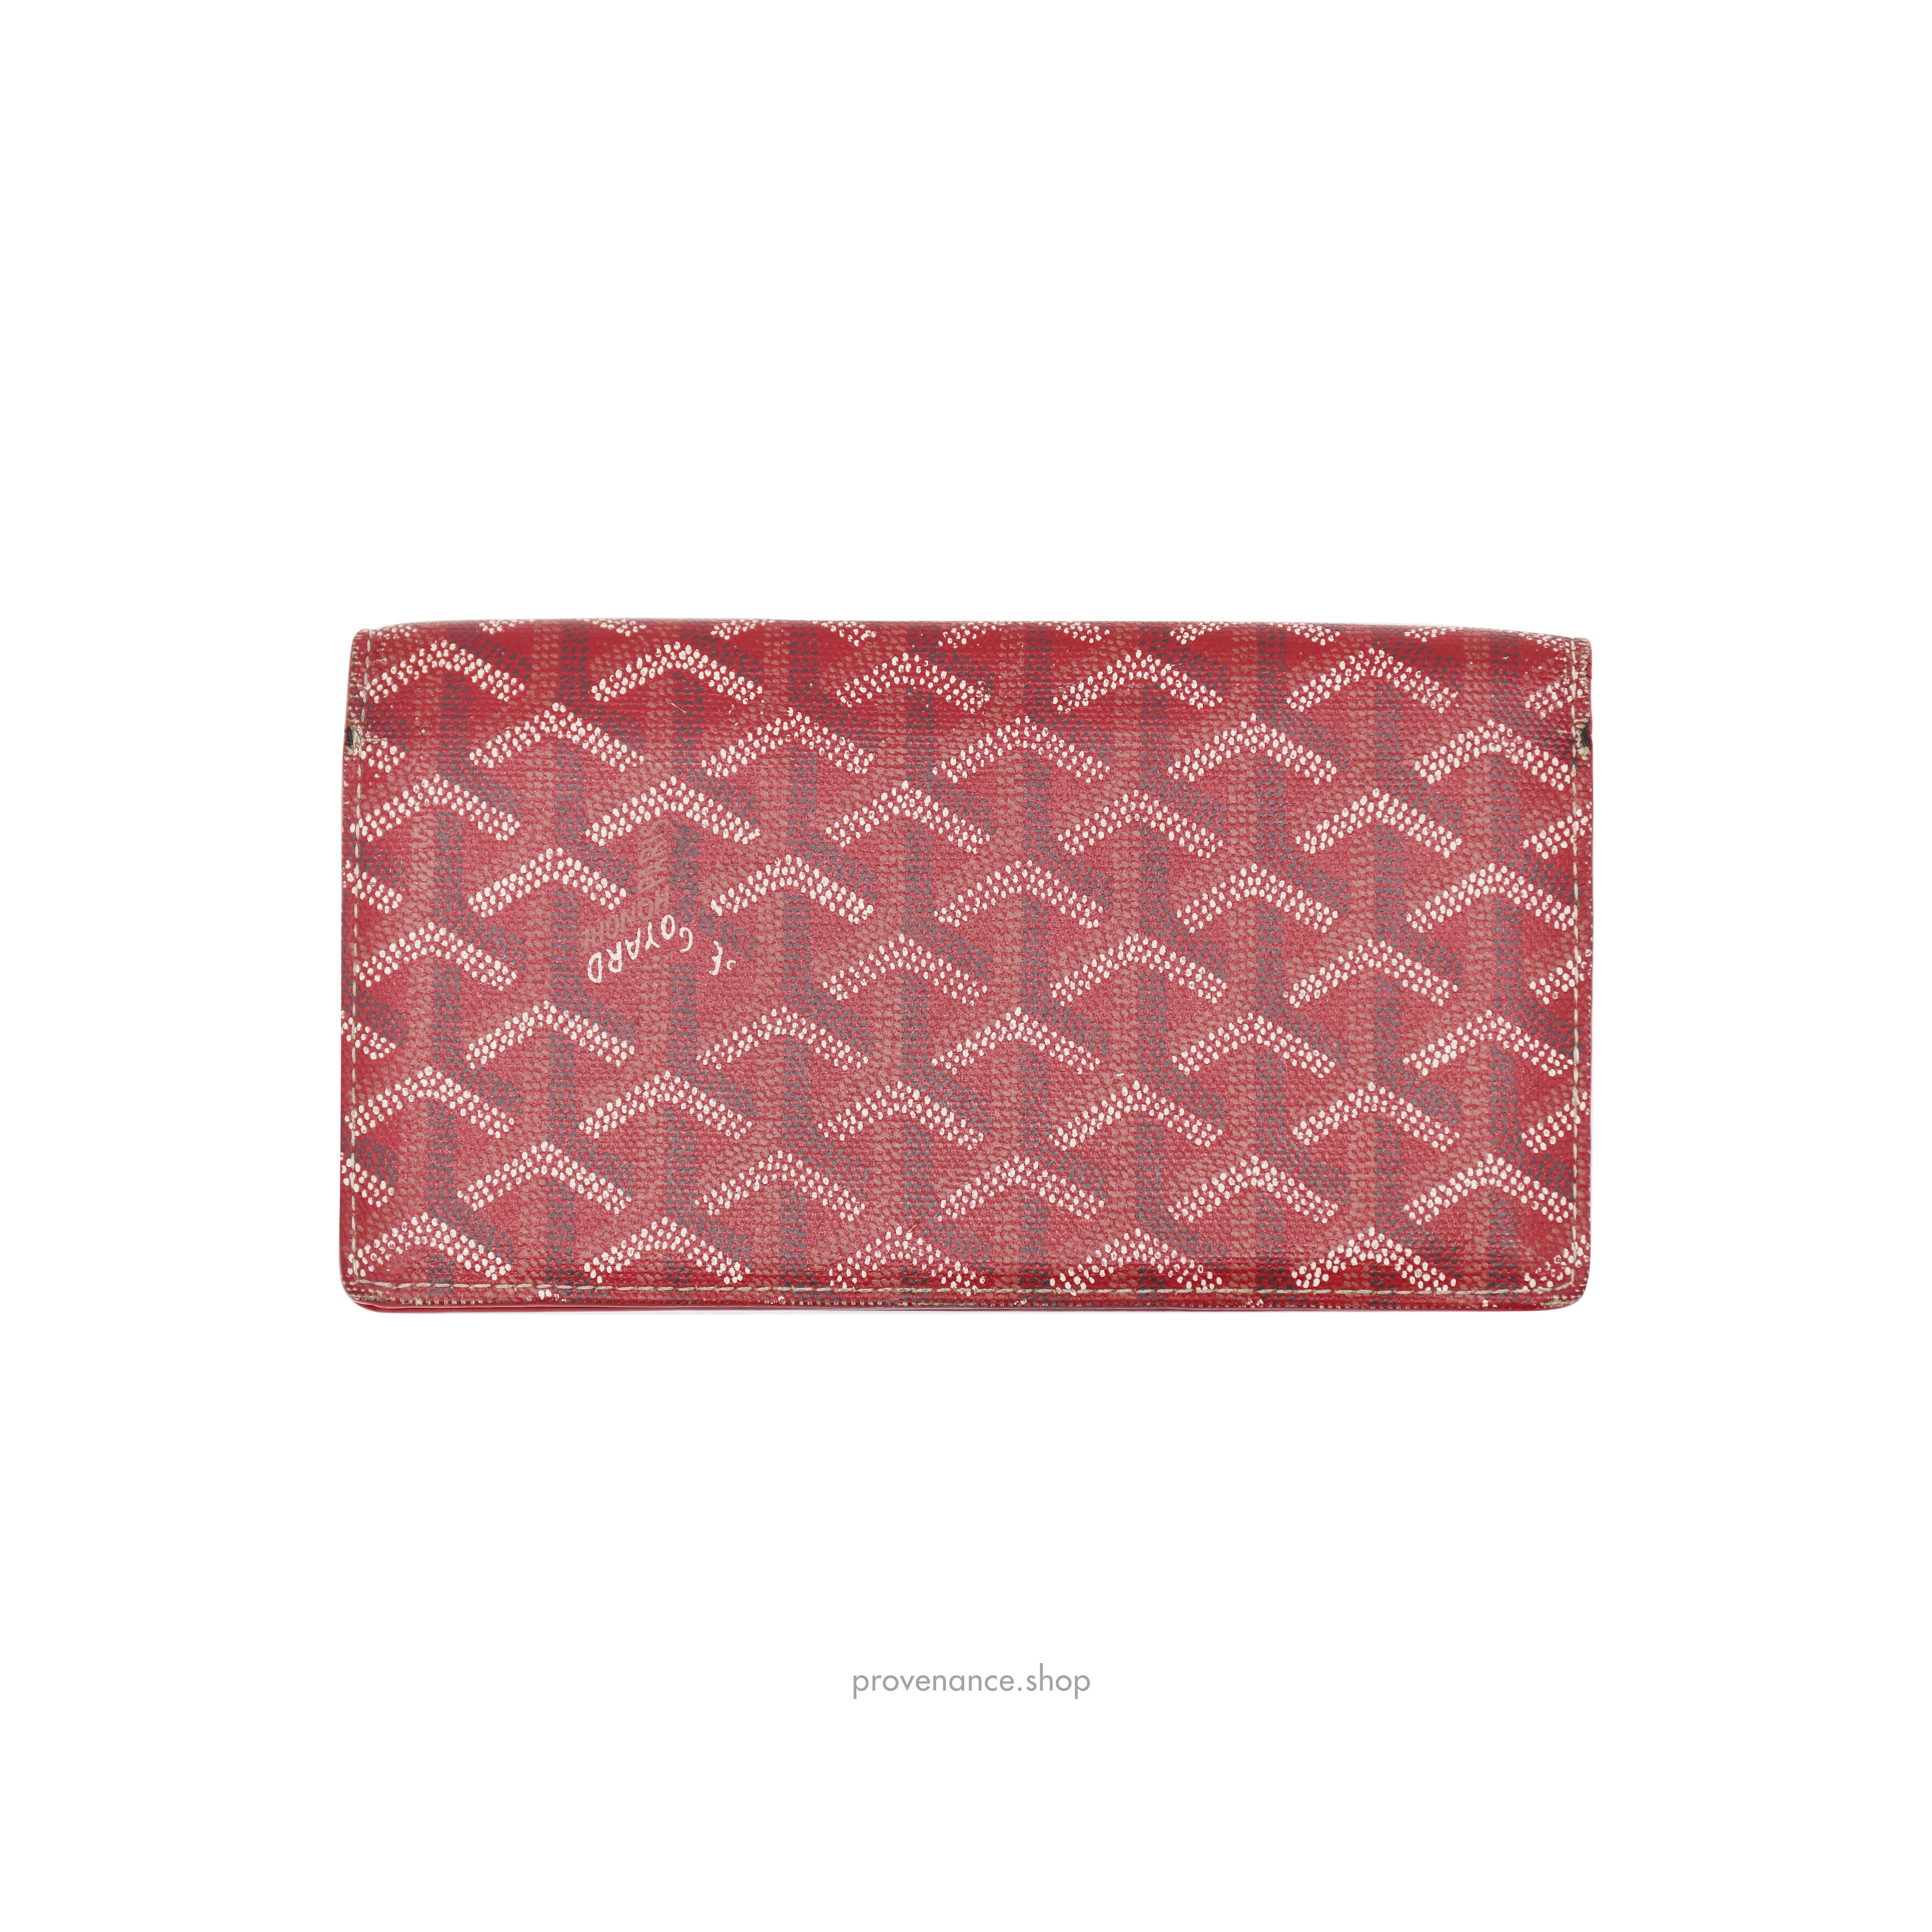 Richelieu Long Wallet - Red Goyardine - 3